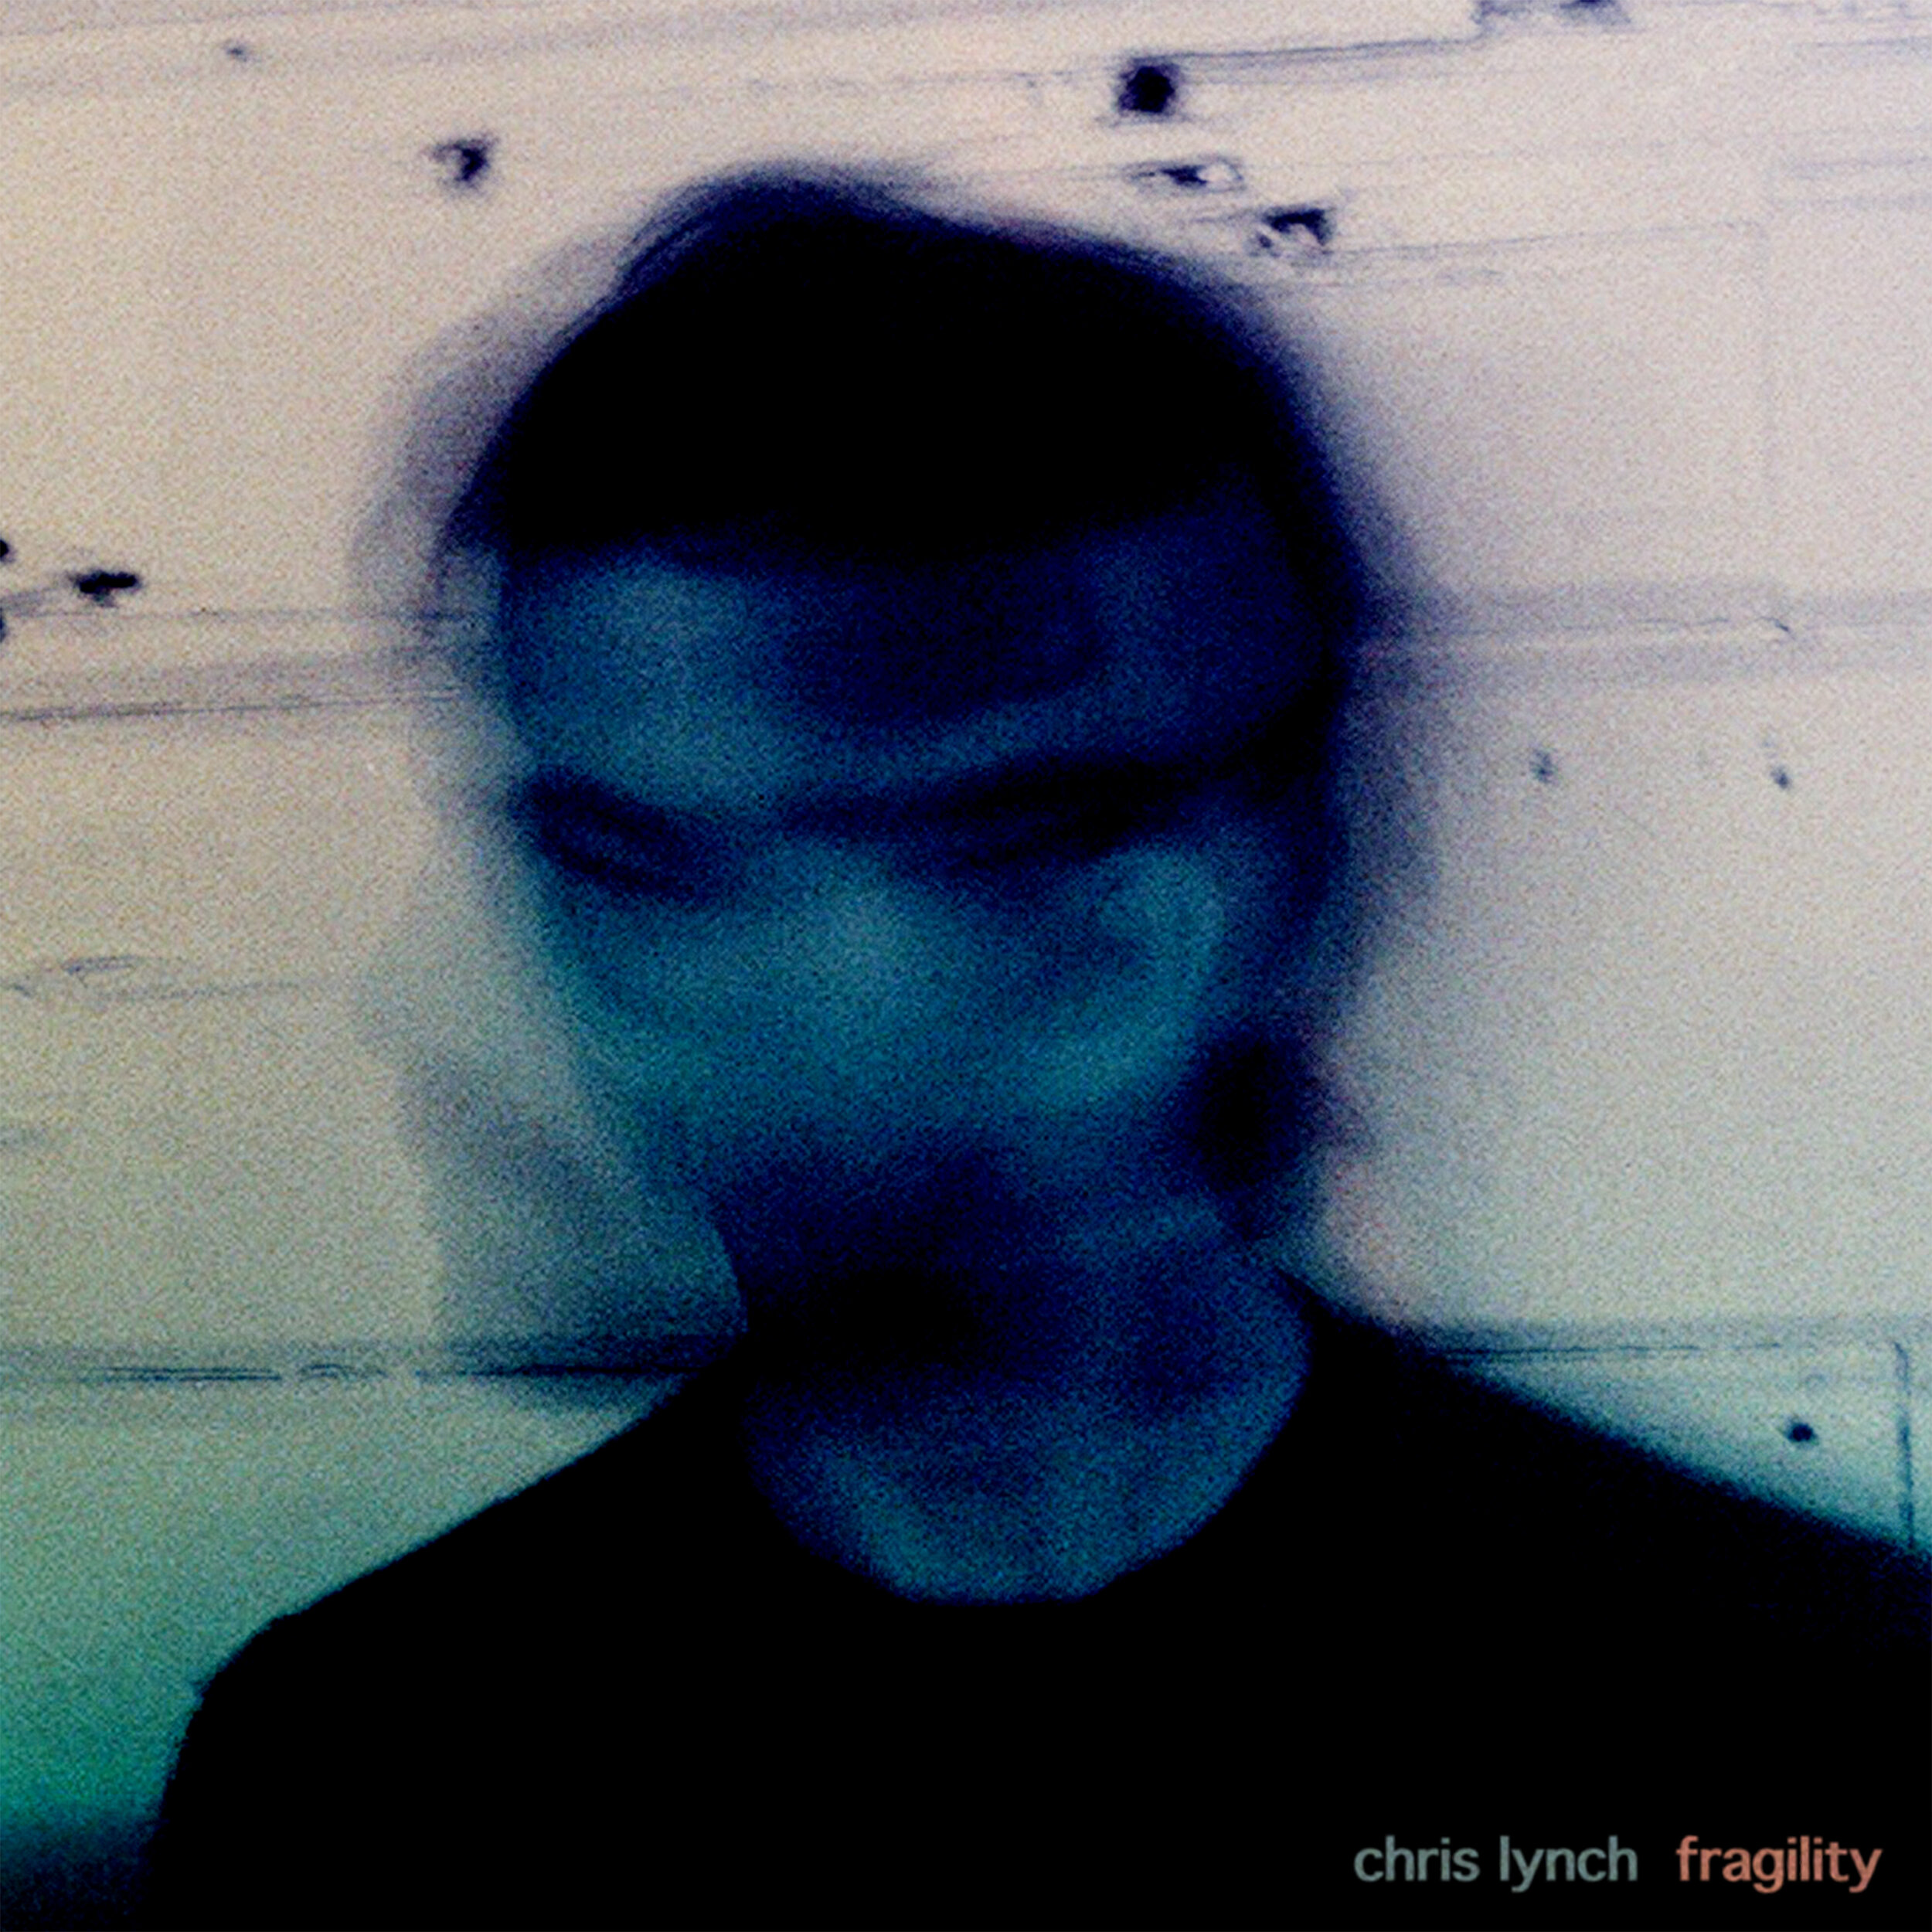 Chris Lynch - Fragility